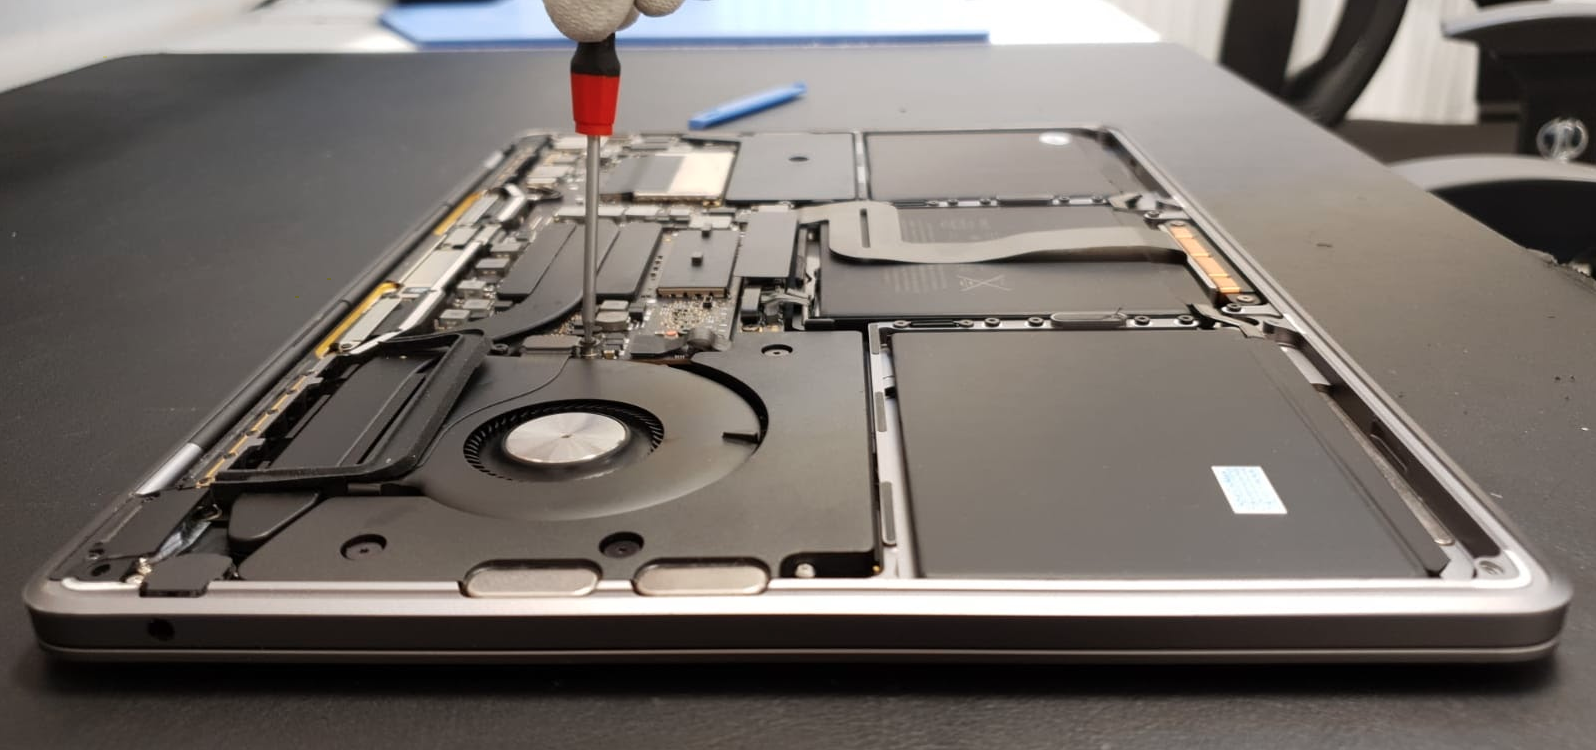 laptop repareren groningen